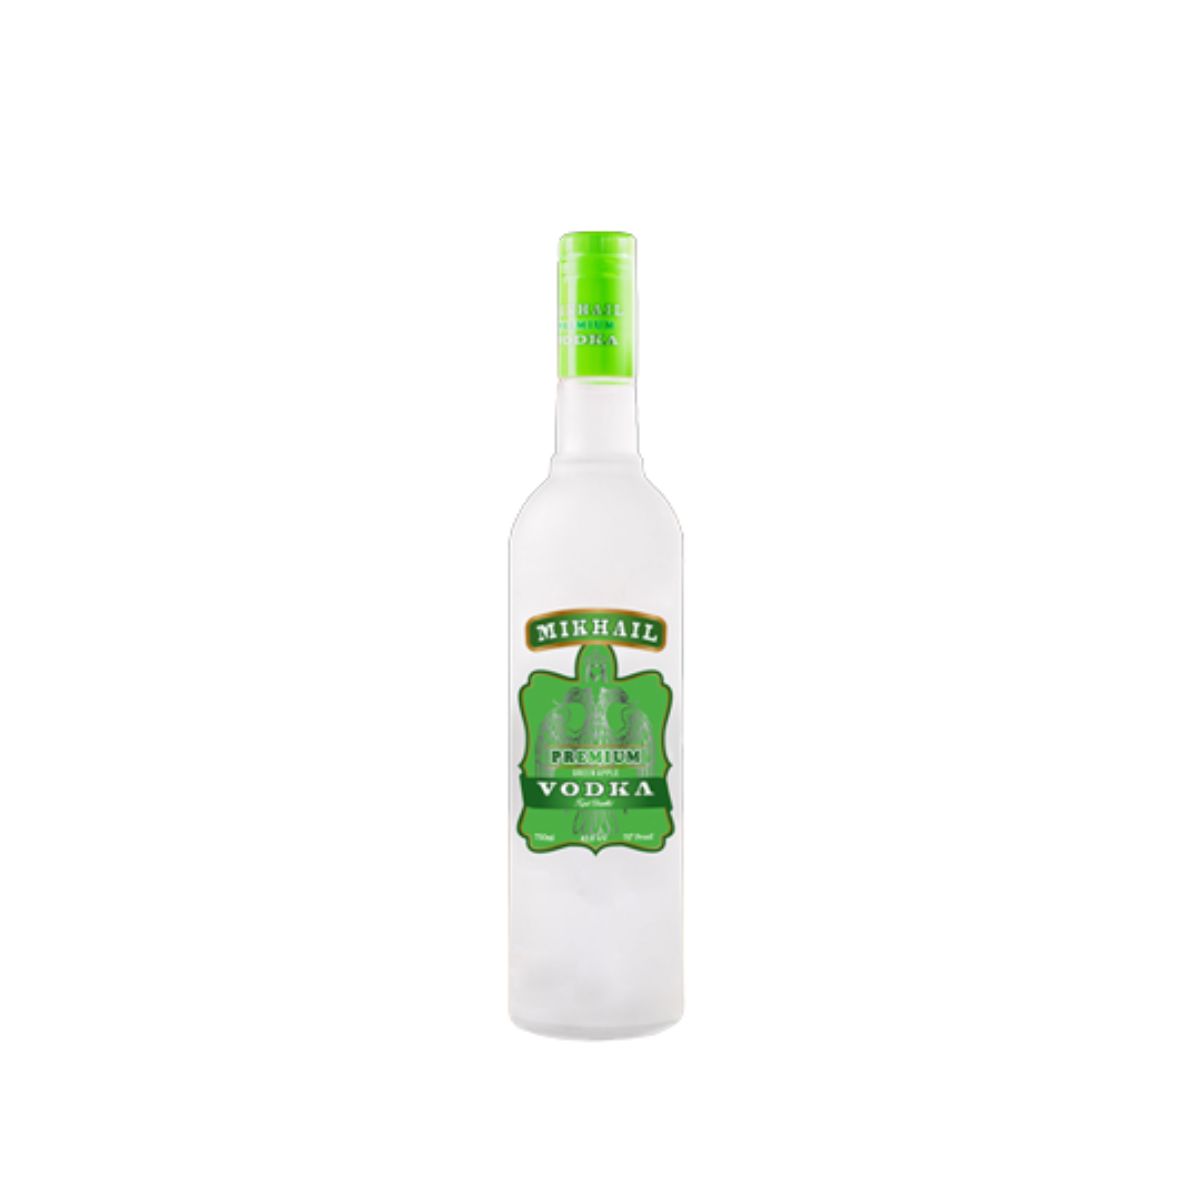 Mikhail Premium Vodka - Guava - Triple Distilled - 42.8% v/v - 750ml